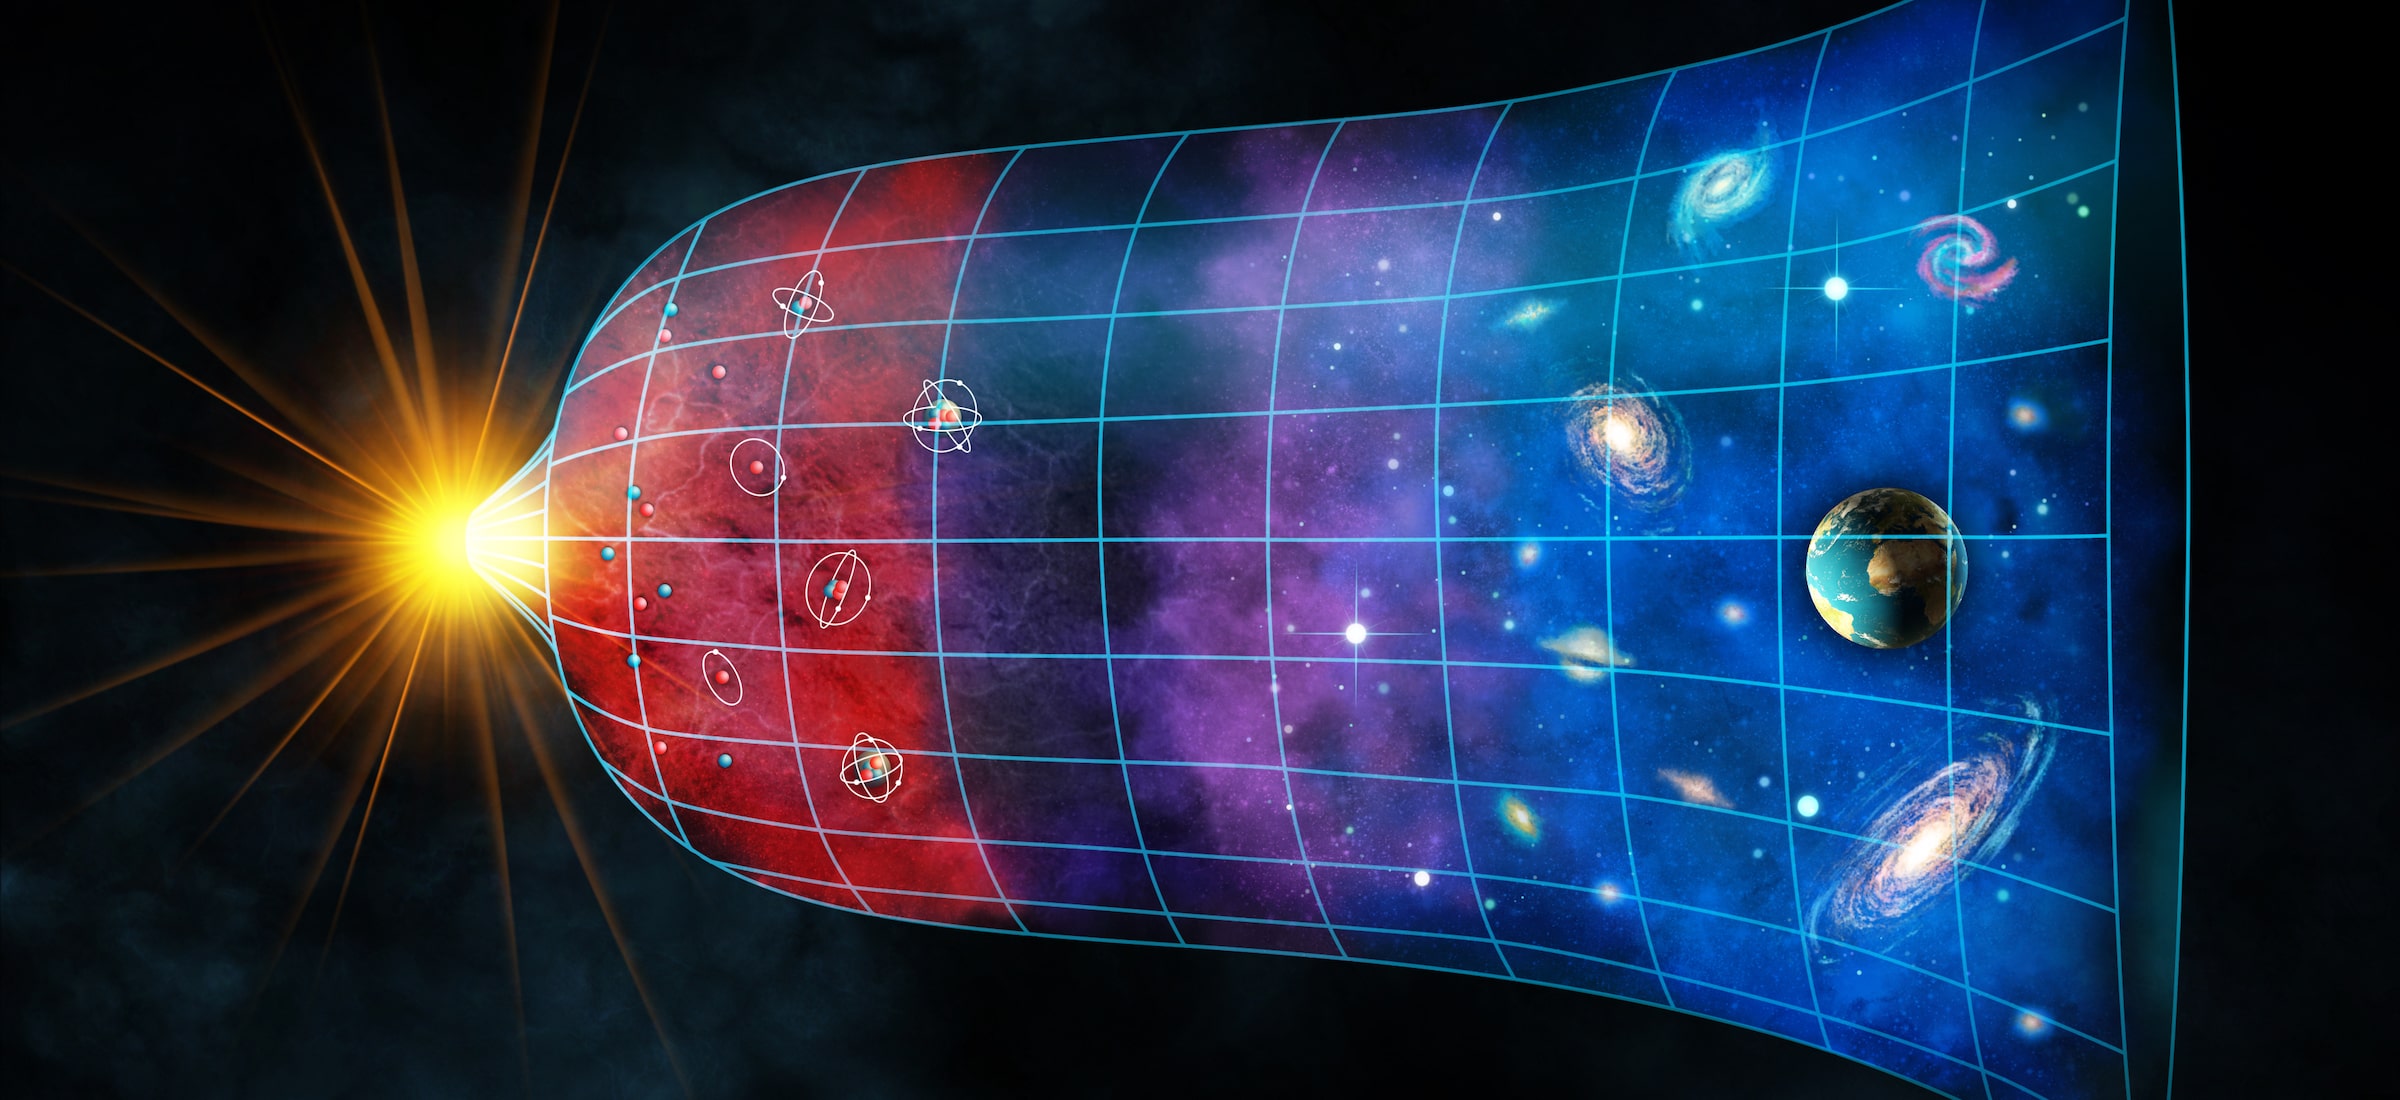 Drugi Big Bang zaraz po pierwszym? Jest nowa teoria powstania Wszechświata